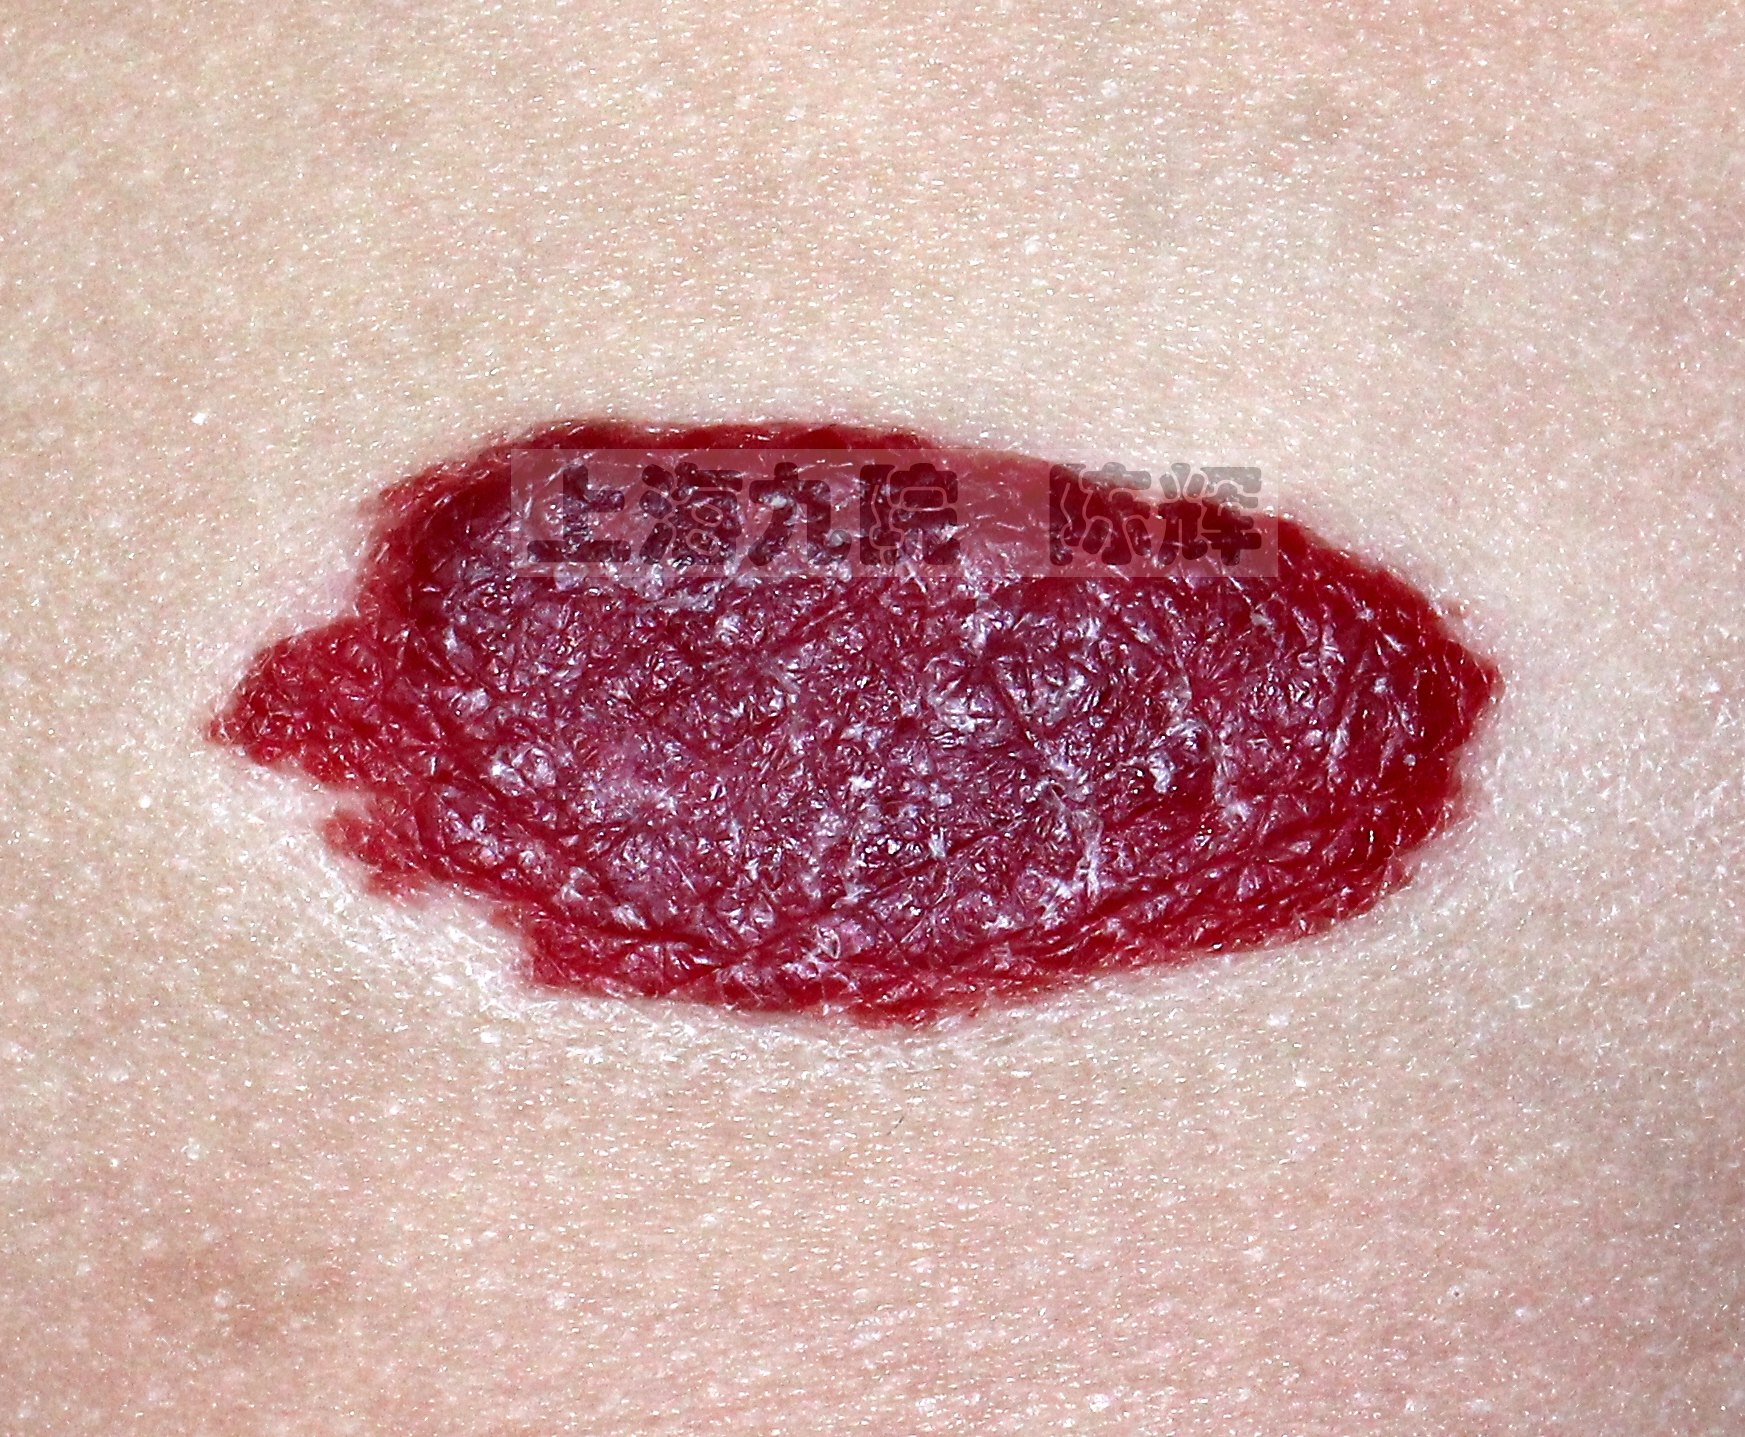 胸部增生期血管瘤.鲜红色,血泡感更加明显,皮肤纹理清晰可见.